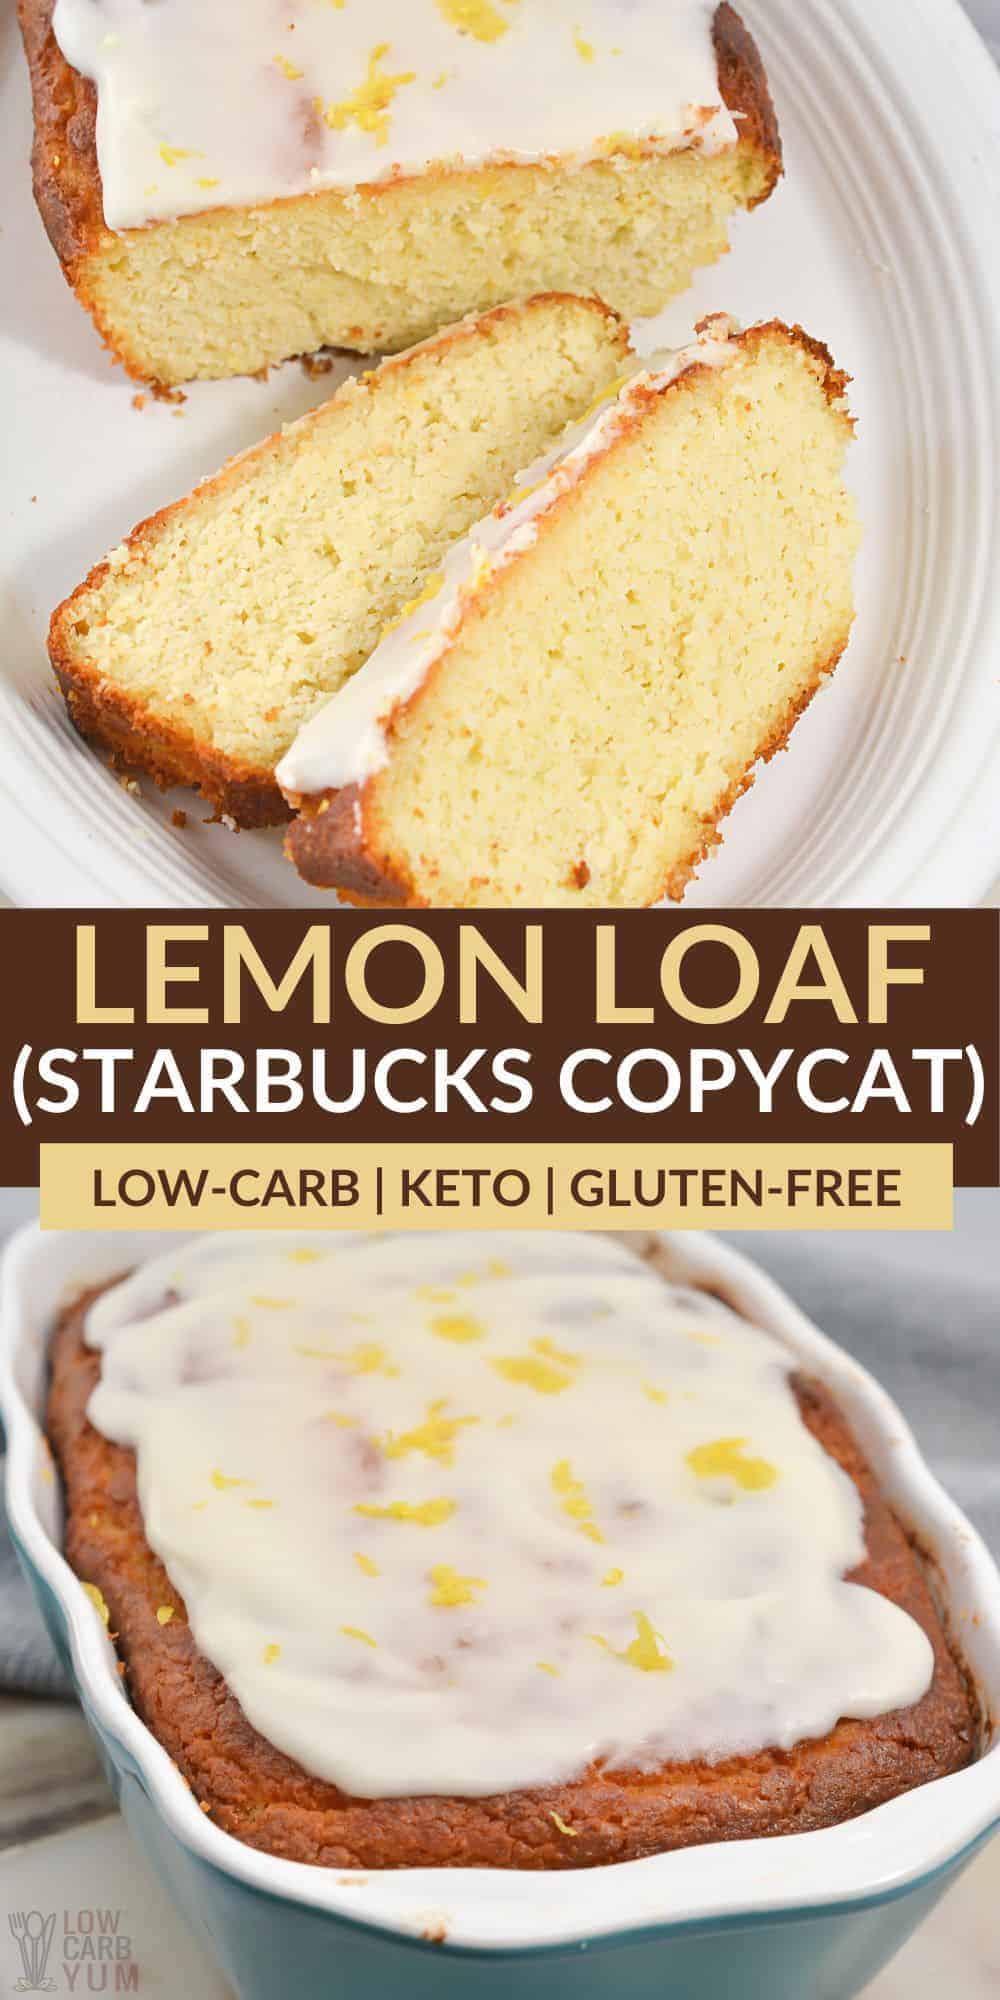 lemon loaf pinterest image.